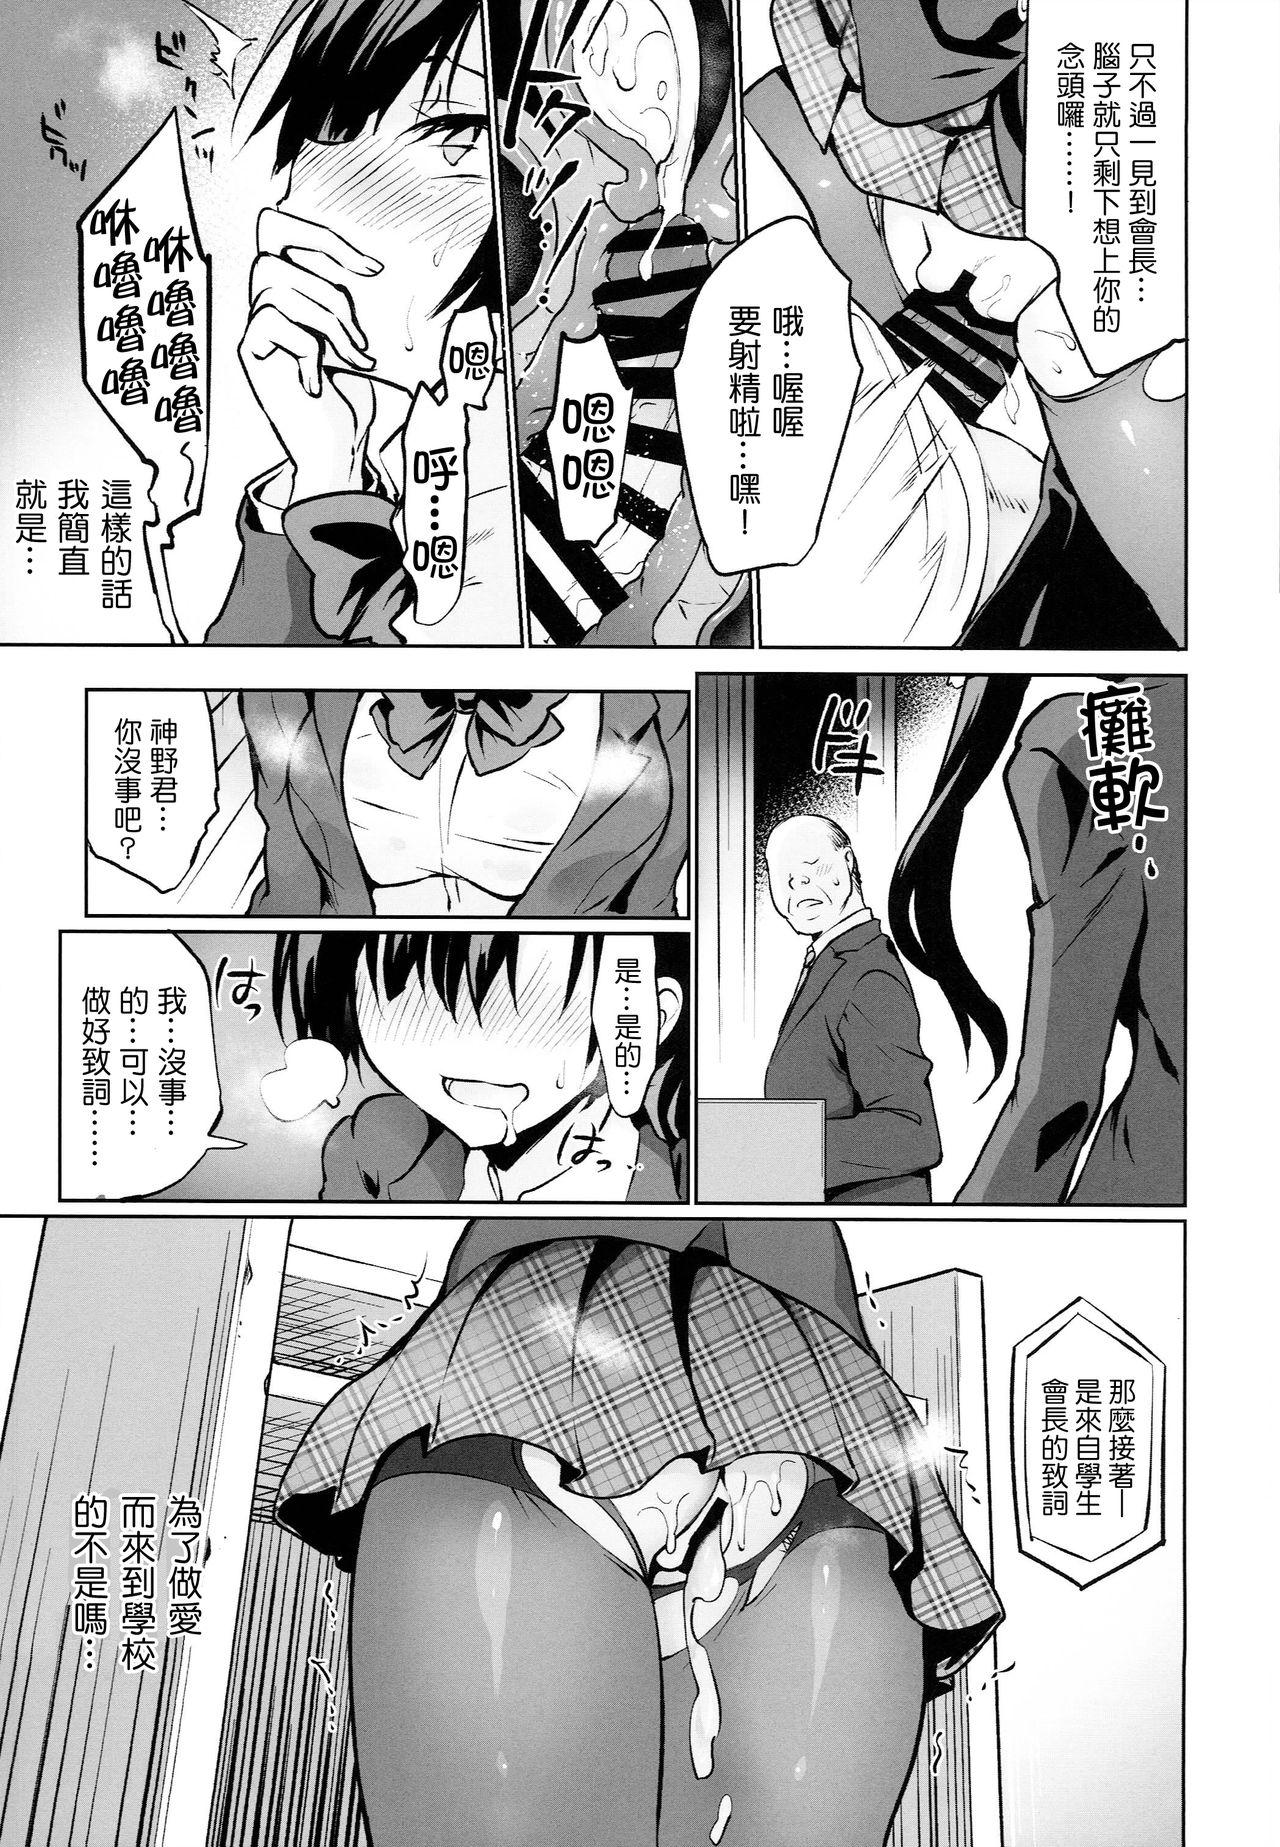 Legs Gakkou de Seishun! 15 - Original Humiliation - Page 6